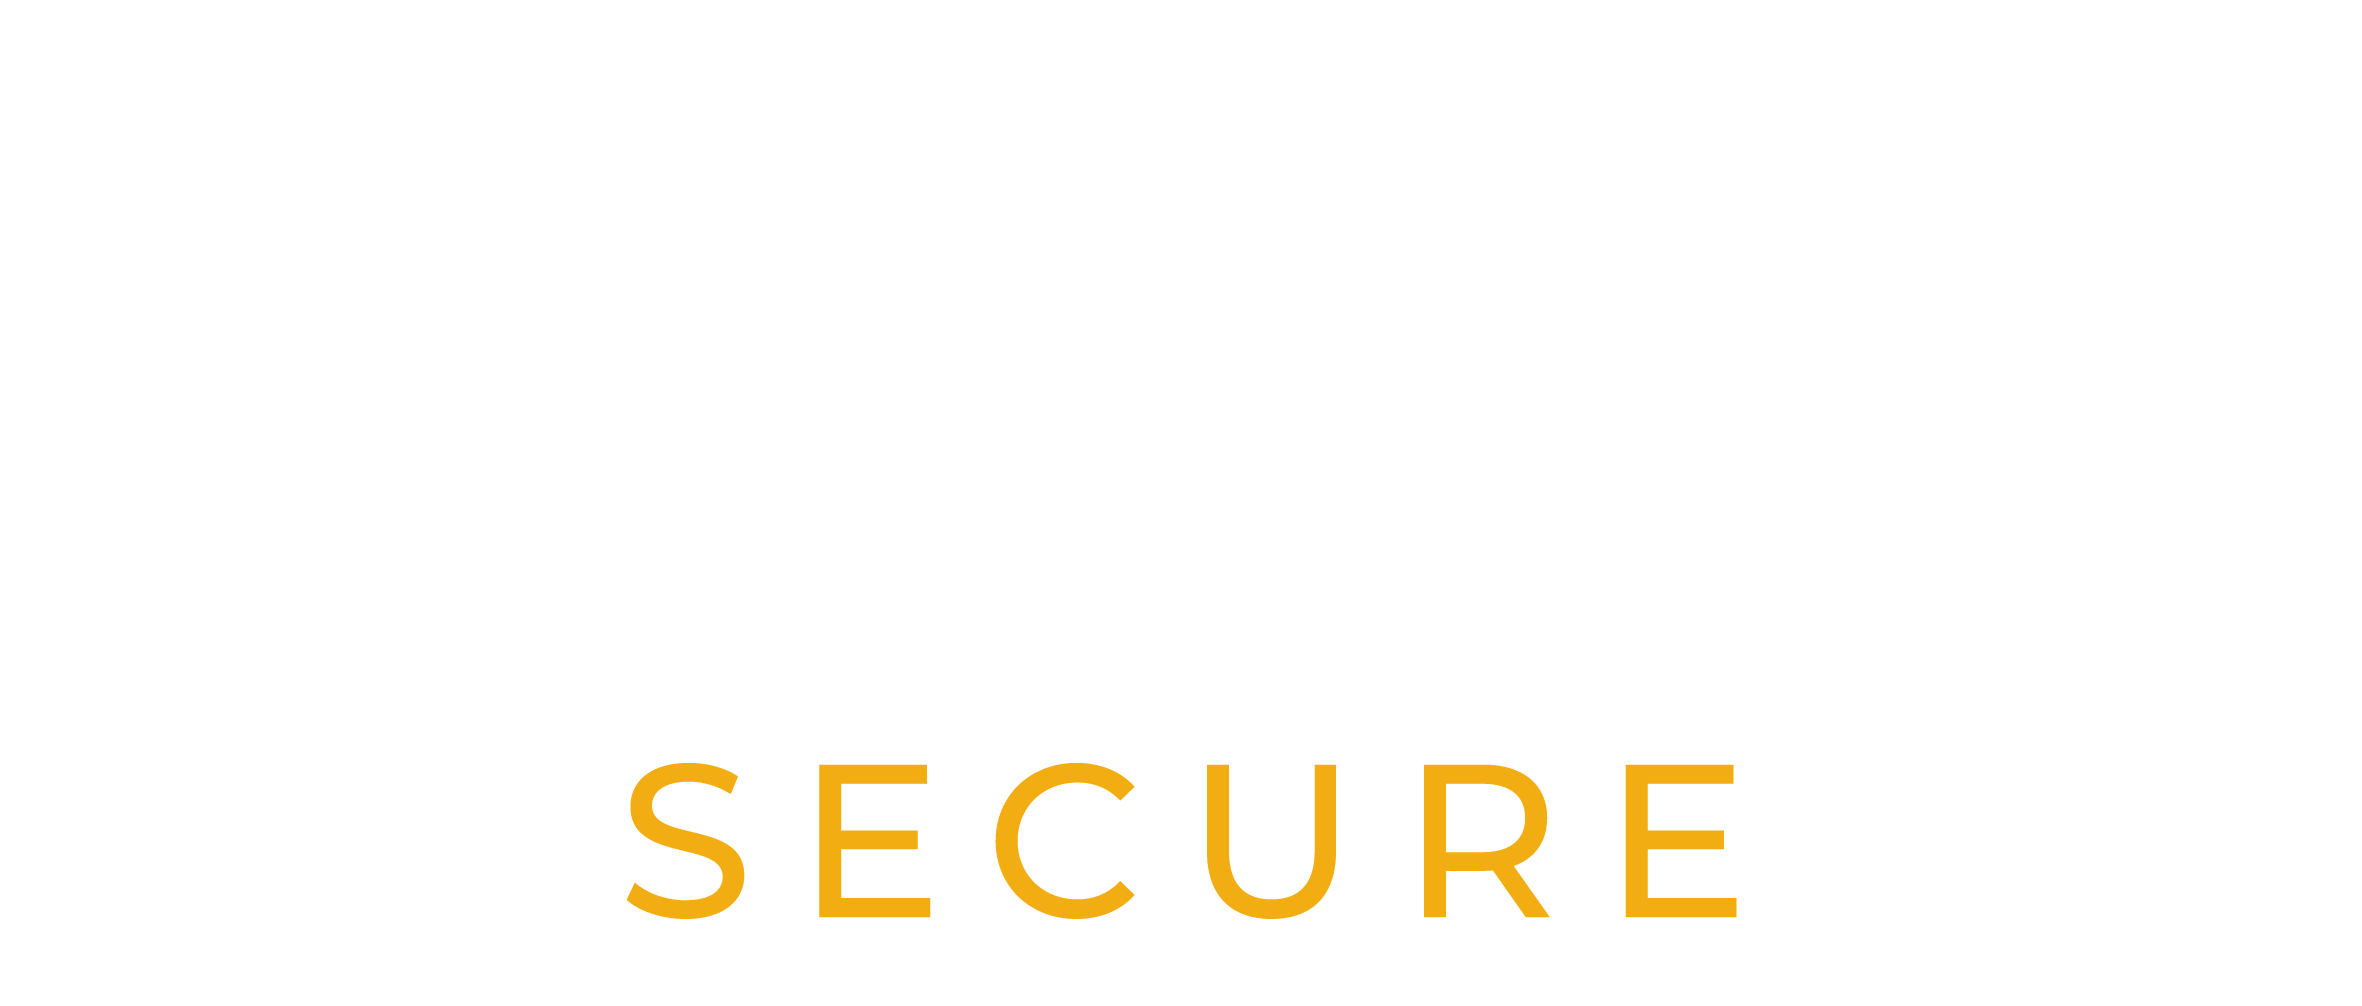 Bagage Secure